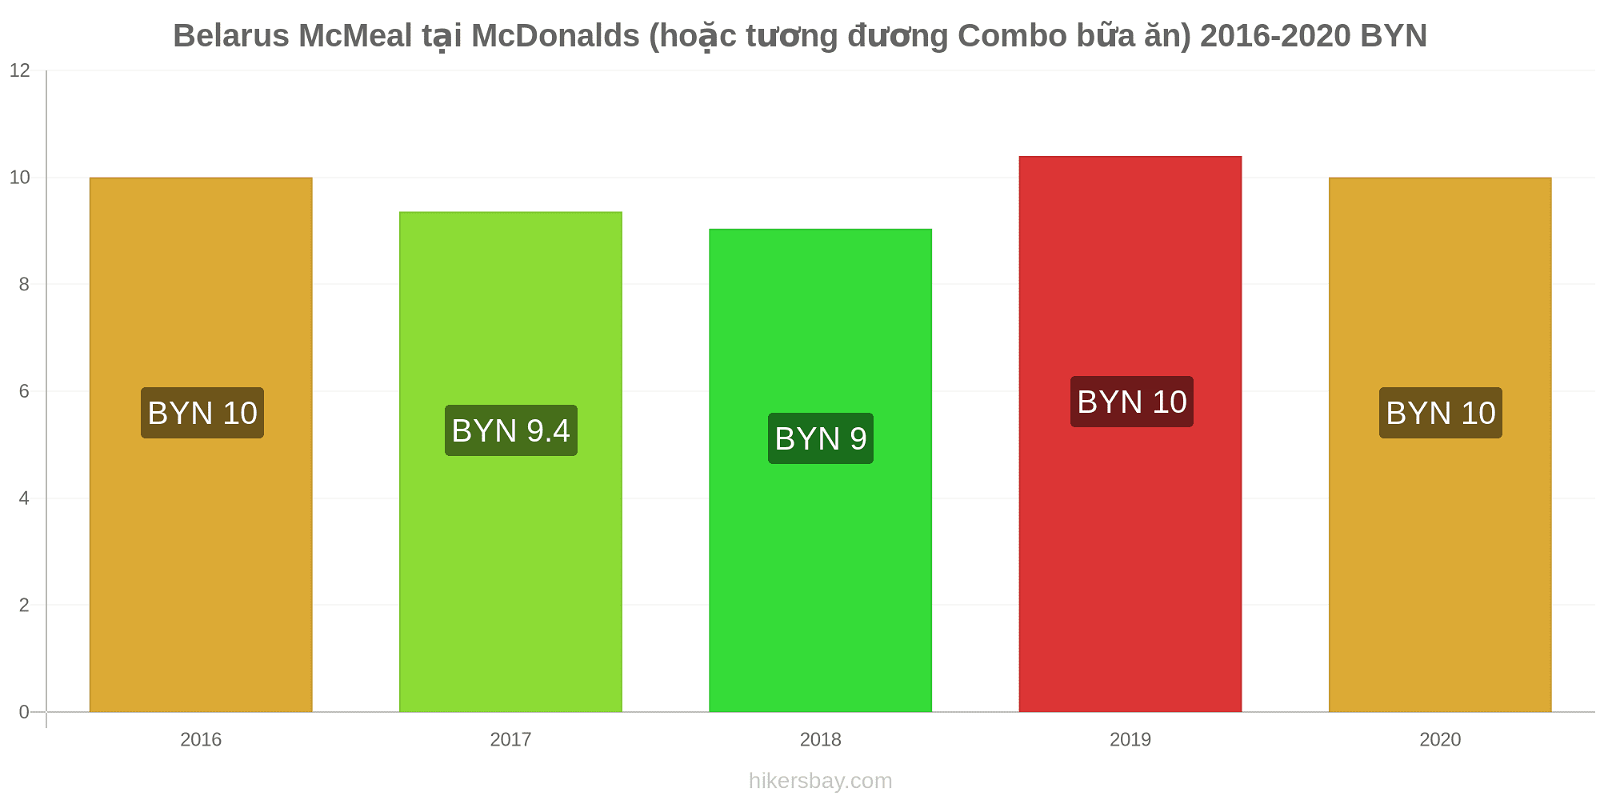 Belarus thay đổi giá McMeal tại McDonalds (hoặc tương đương Combo bữa ăn) hikersbay.com